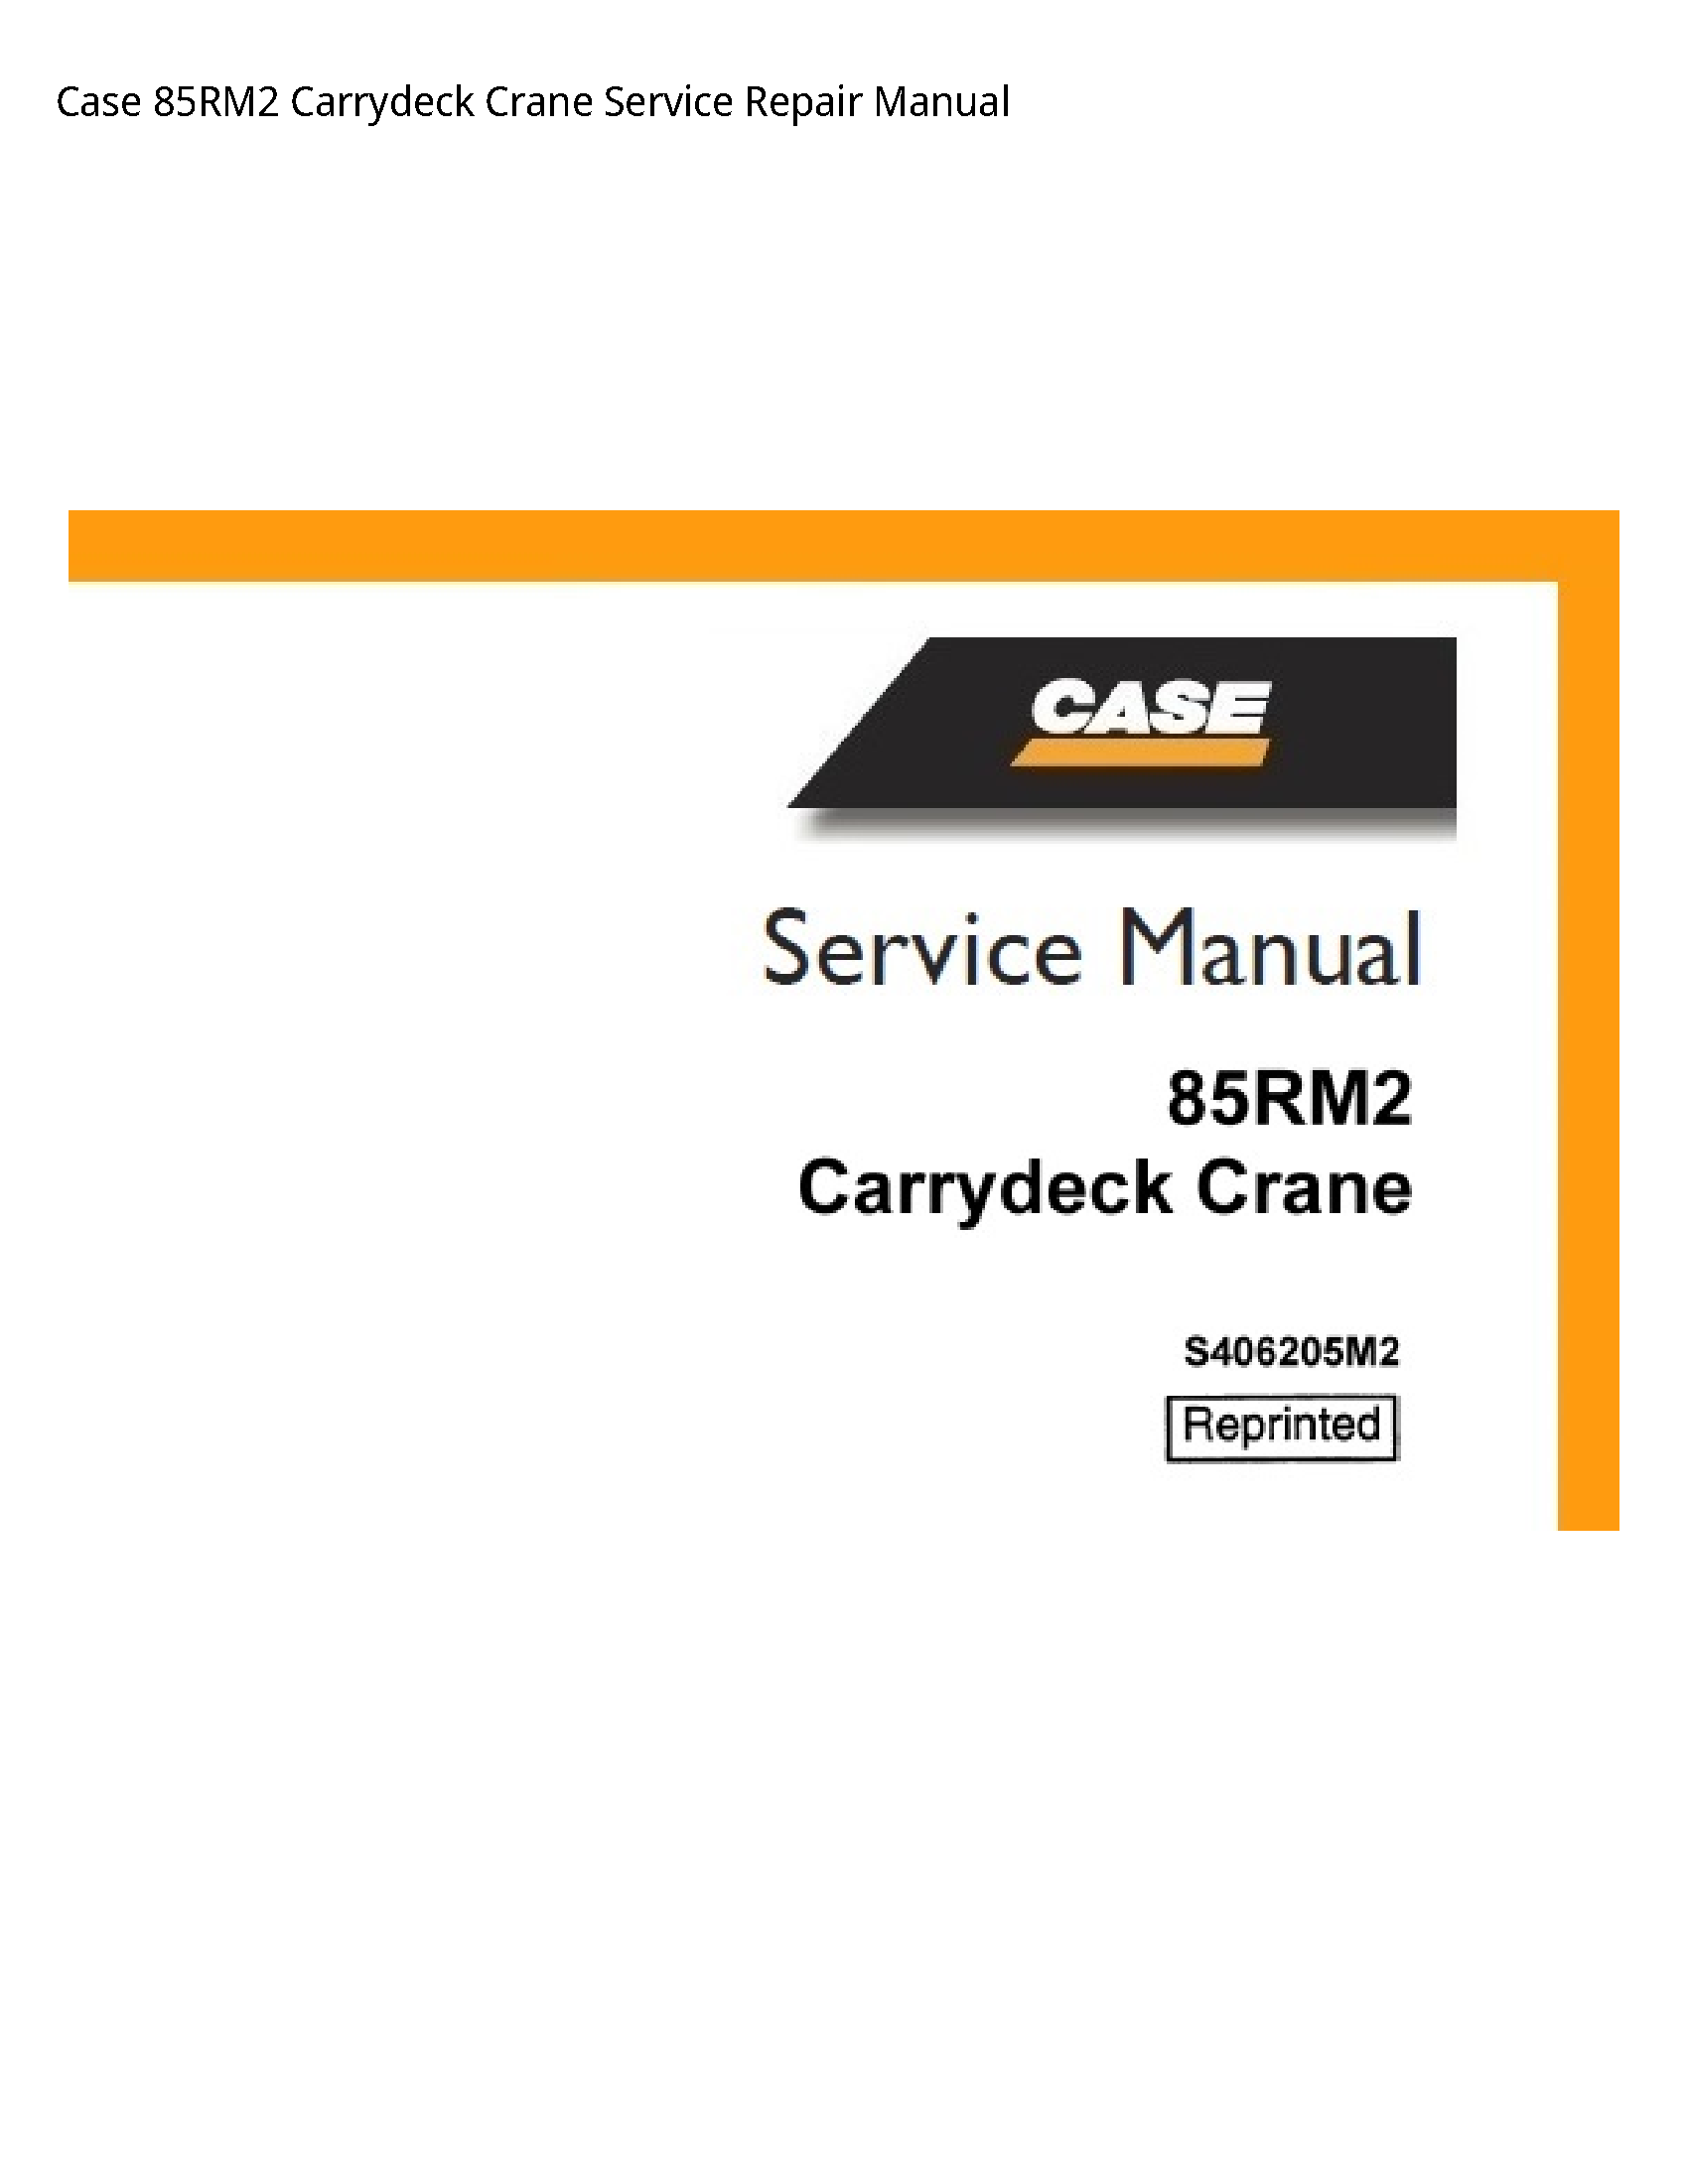 Case/Case IH 85RM2 Carrydeck Crane manual